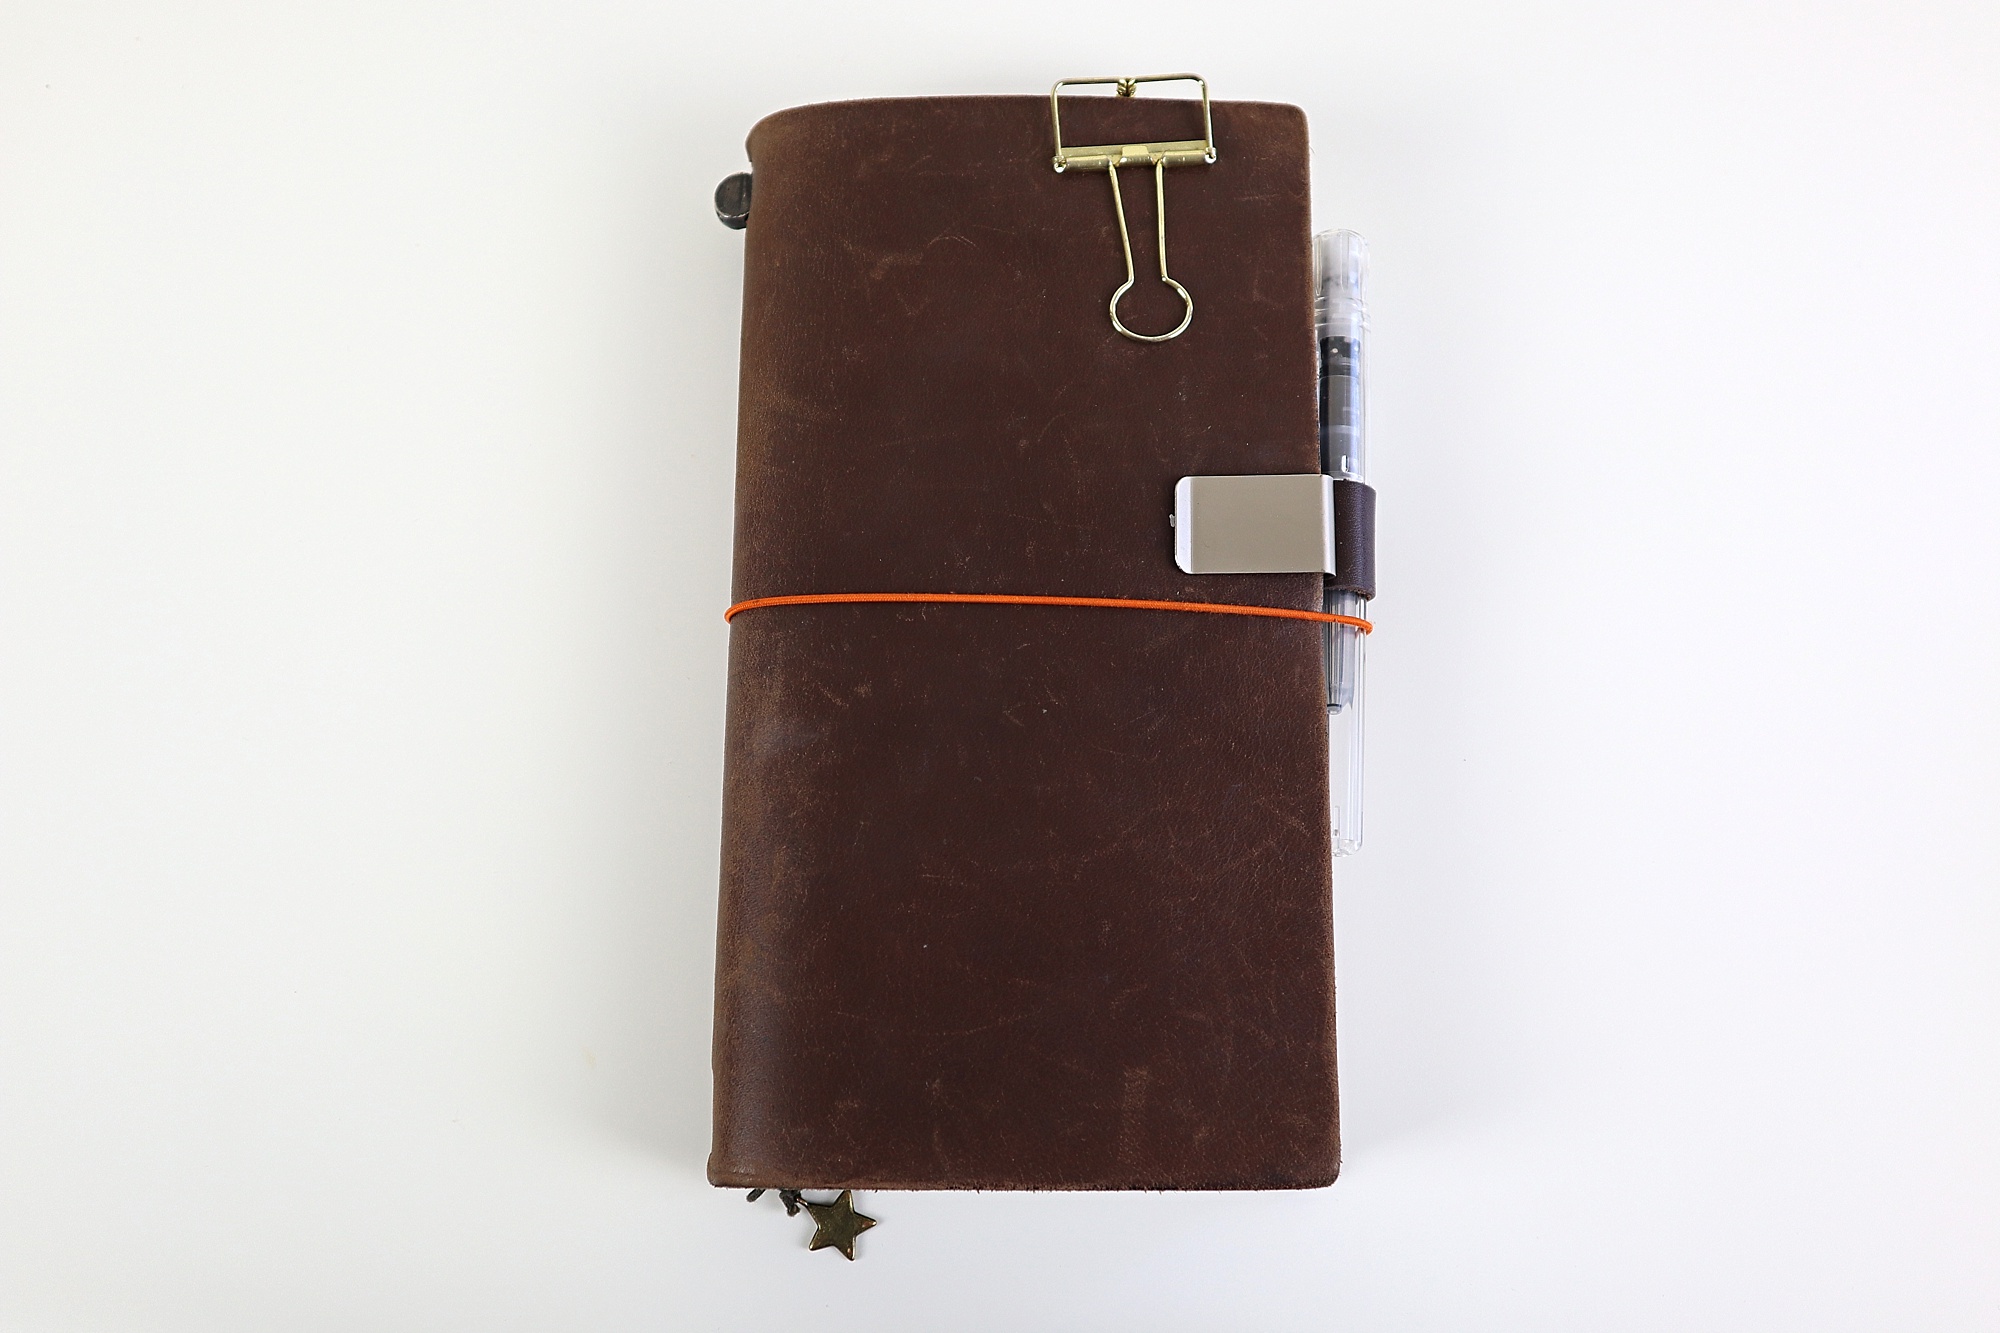 midori travelers notebook